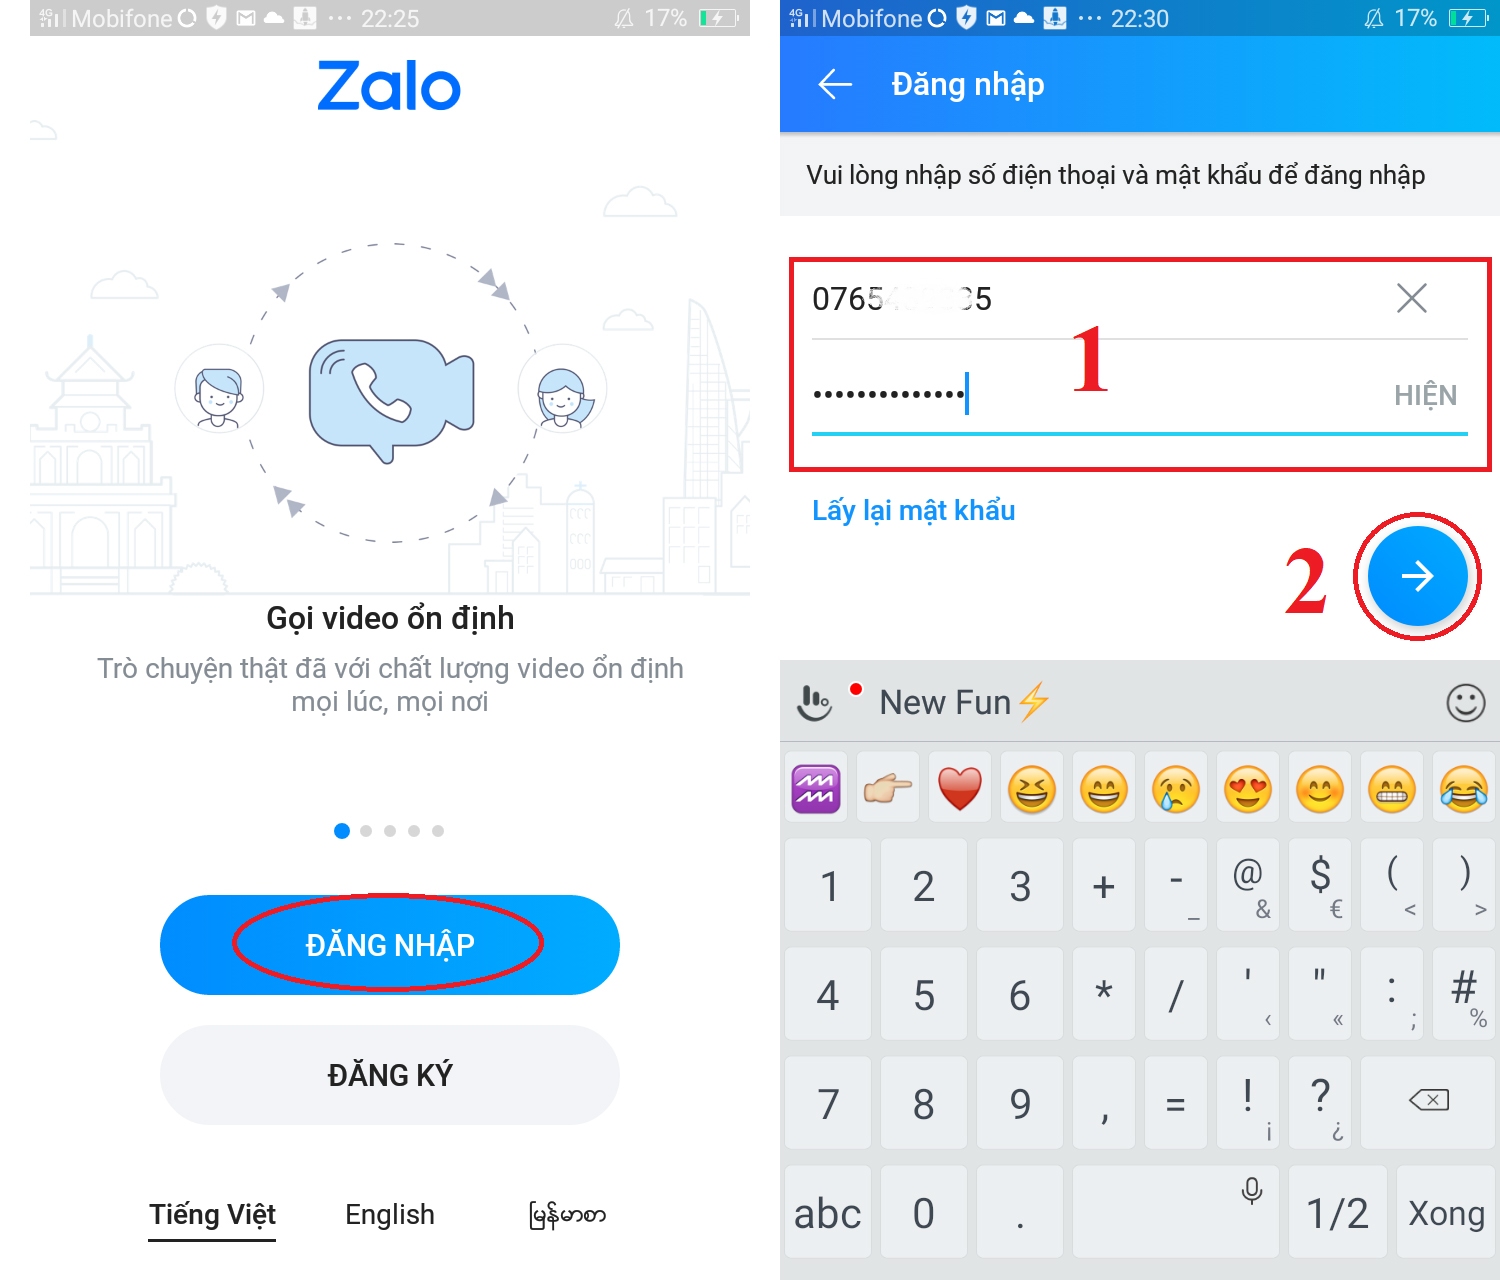 Đăng nhập 1 tài khoản Zalo trên 2 điện thoại Android cùng lúc